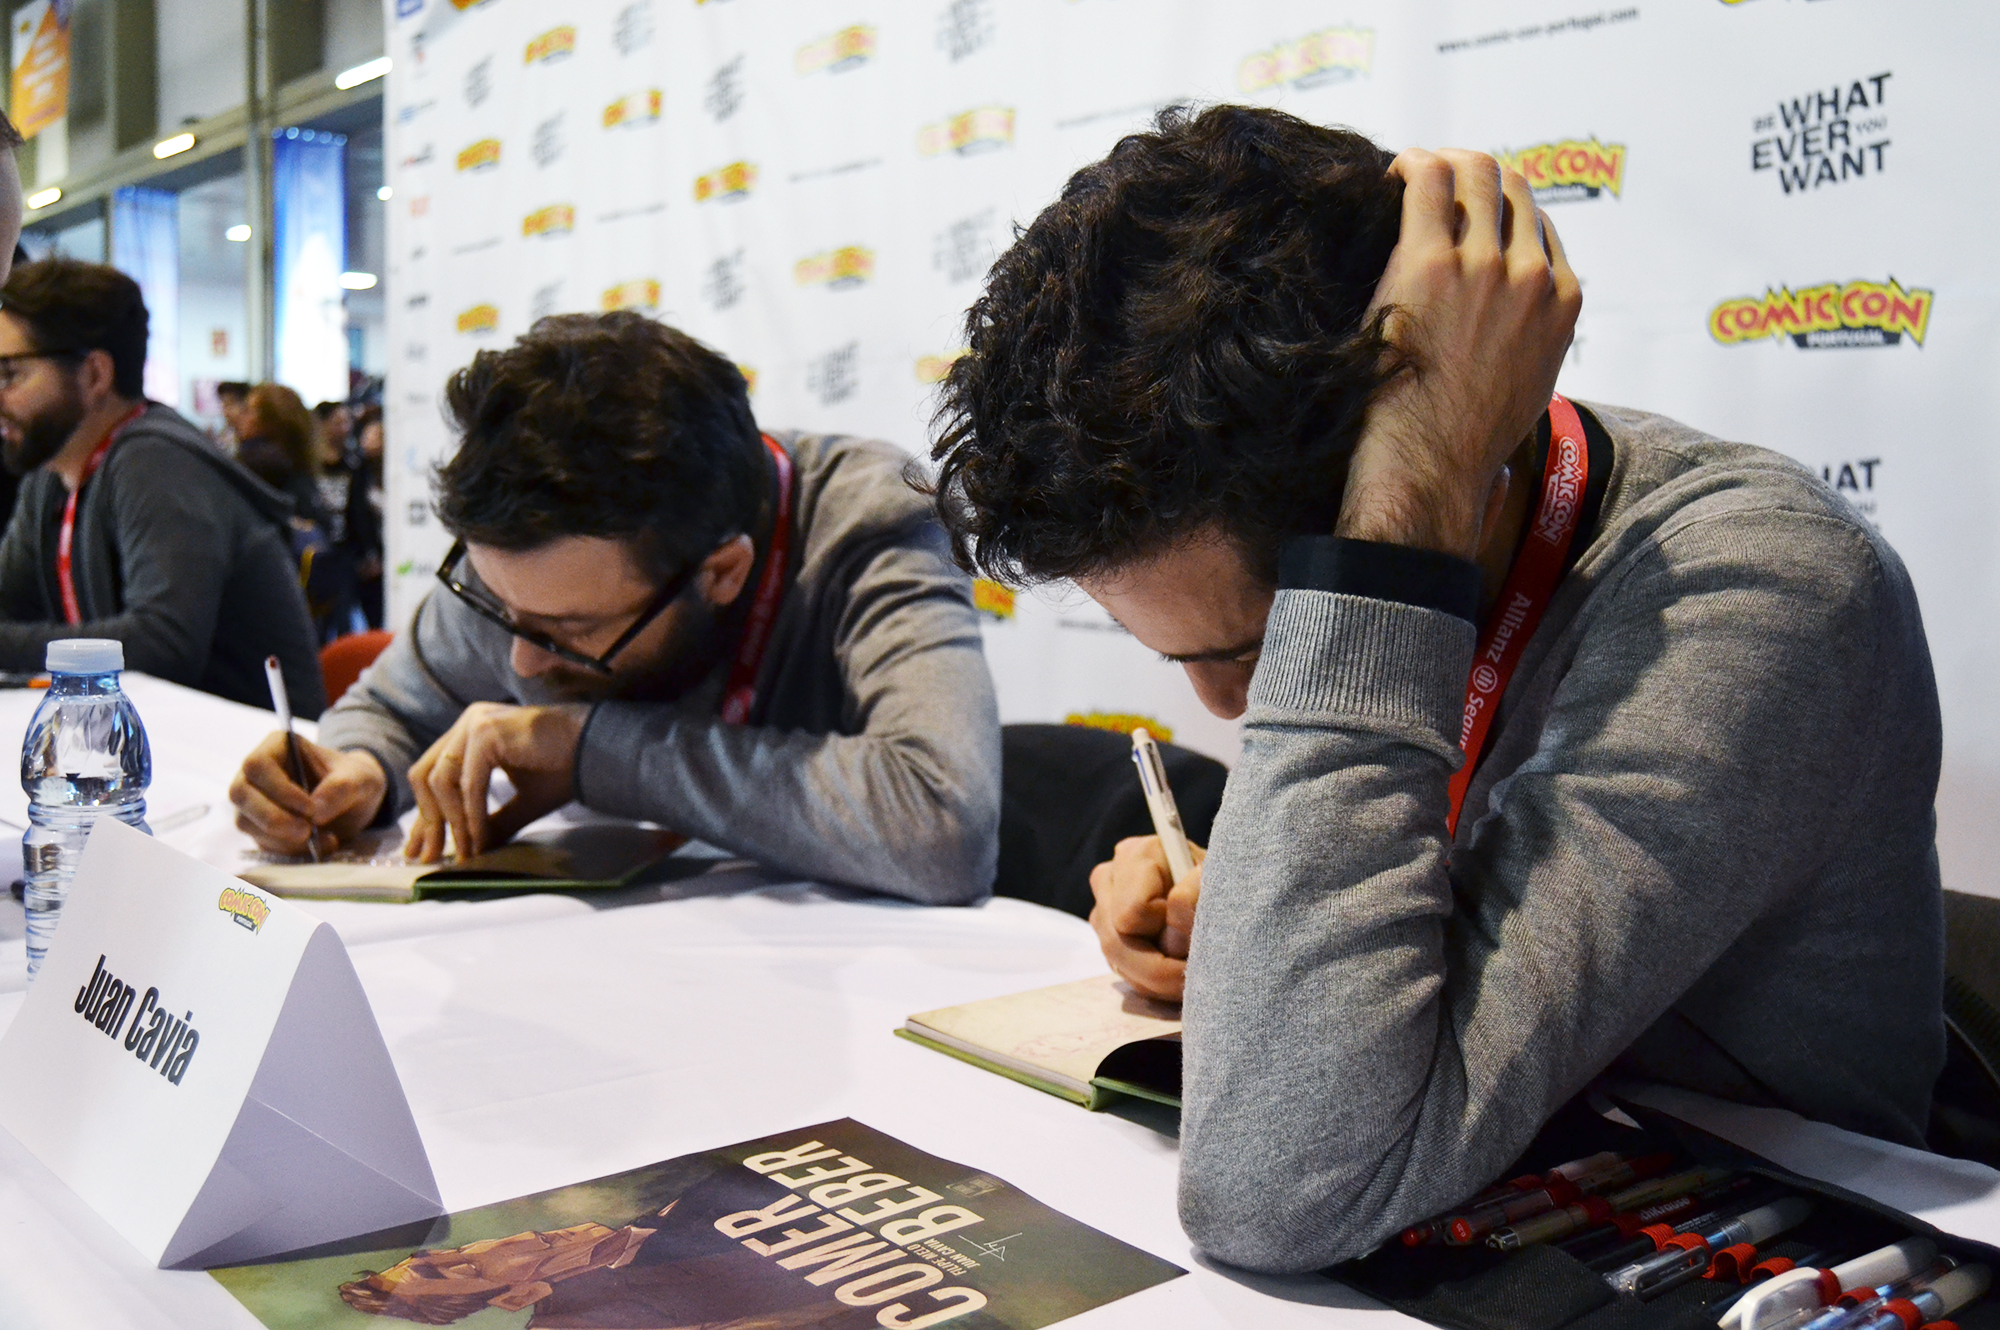 Filipe Melo e Juan Cavia apresentaram "Comer/Beber" na Comic Con.